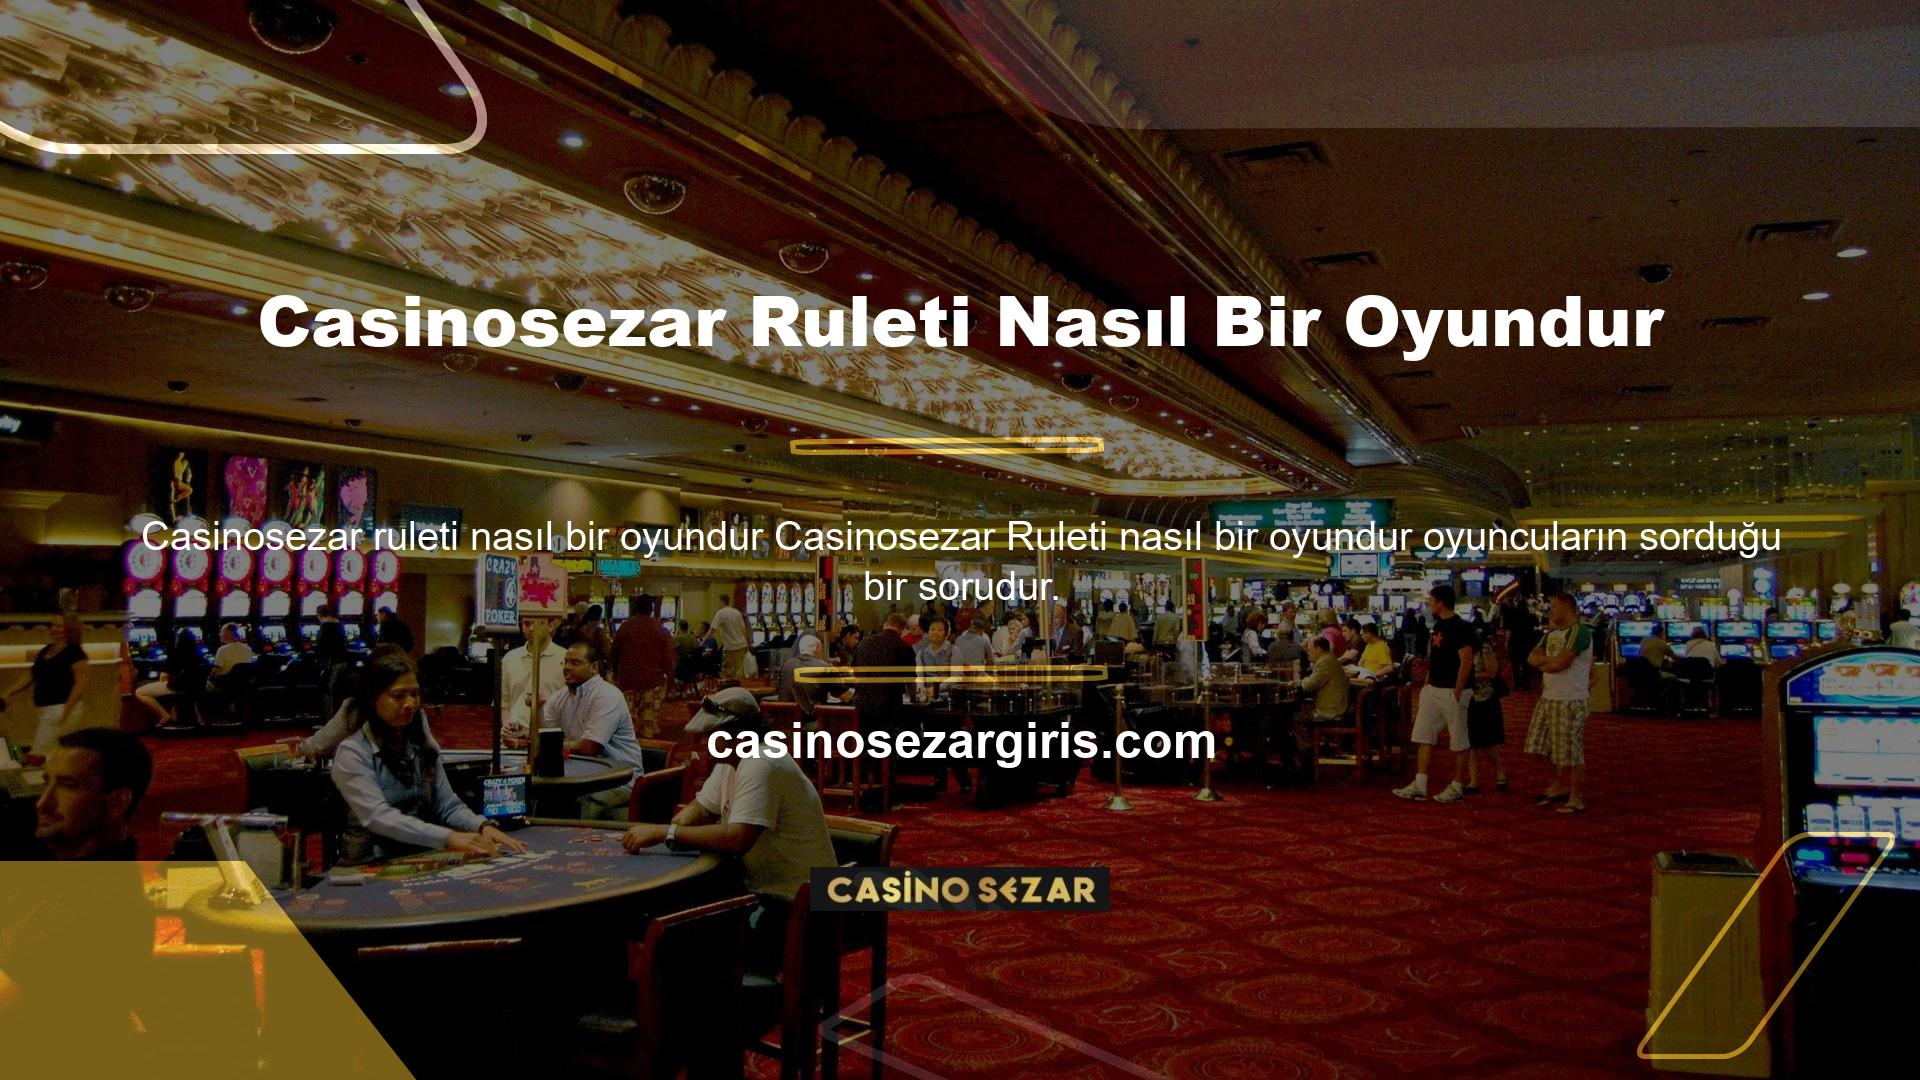 Rulet, dünyanın en ünlü casino oyunlarından biridir